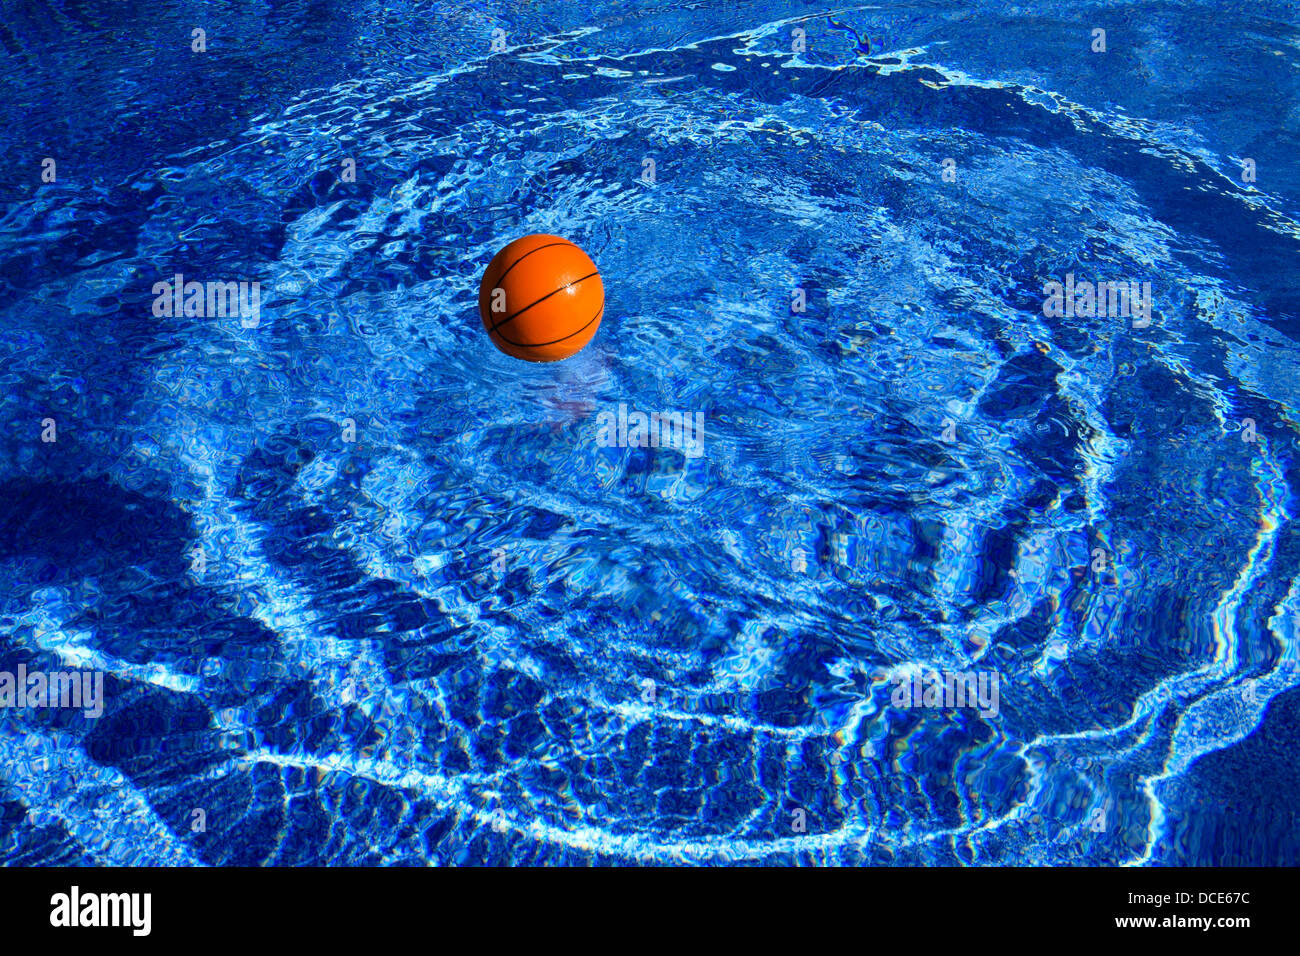 Ein Basketball schafft konzentrische Wellen im tiefblauen Schwimmbadwasser Stockfoto